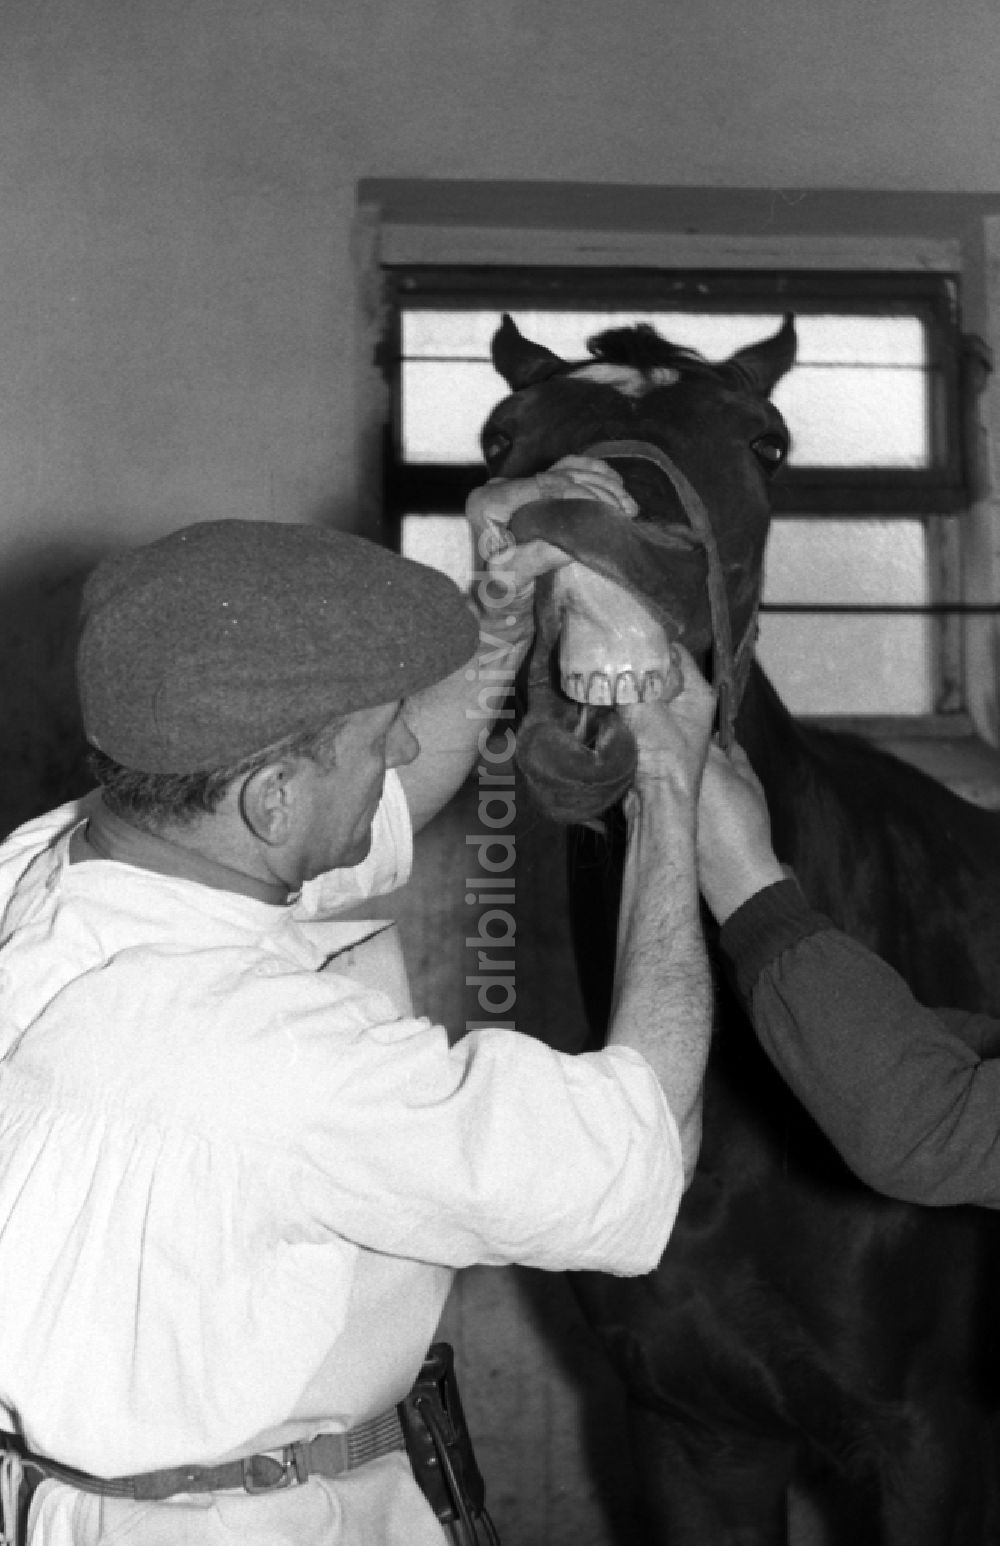 DDR-Bildarchiv: Hoppegarten - Tierarzt bei Zahnbeandlung eines Pferdes in Hoppegarten in Brandenburg in der DDR